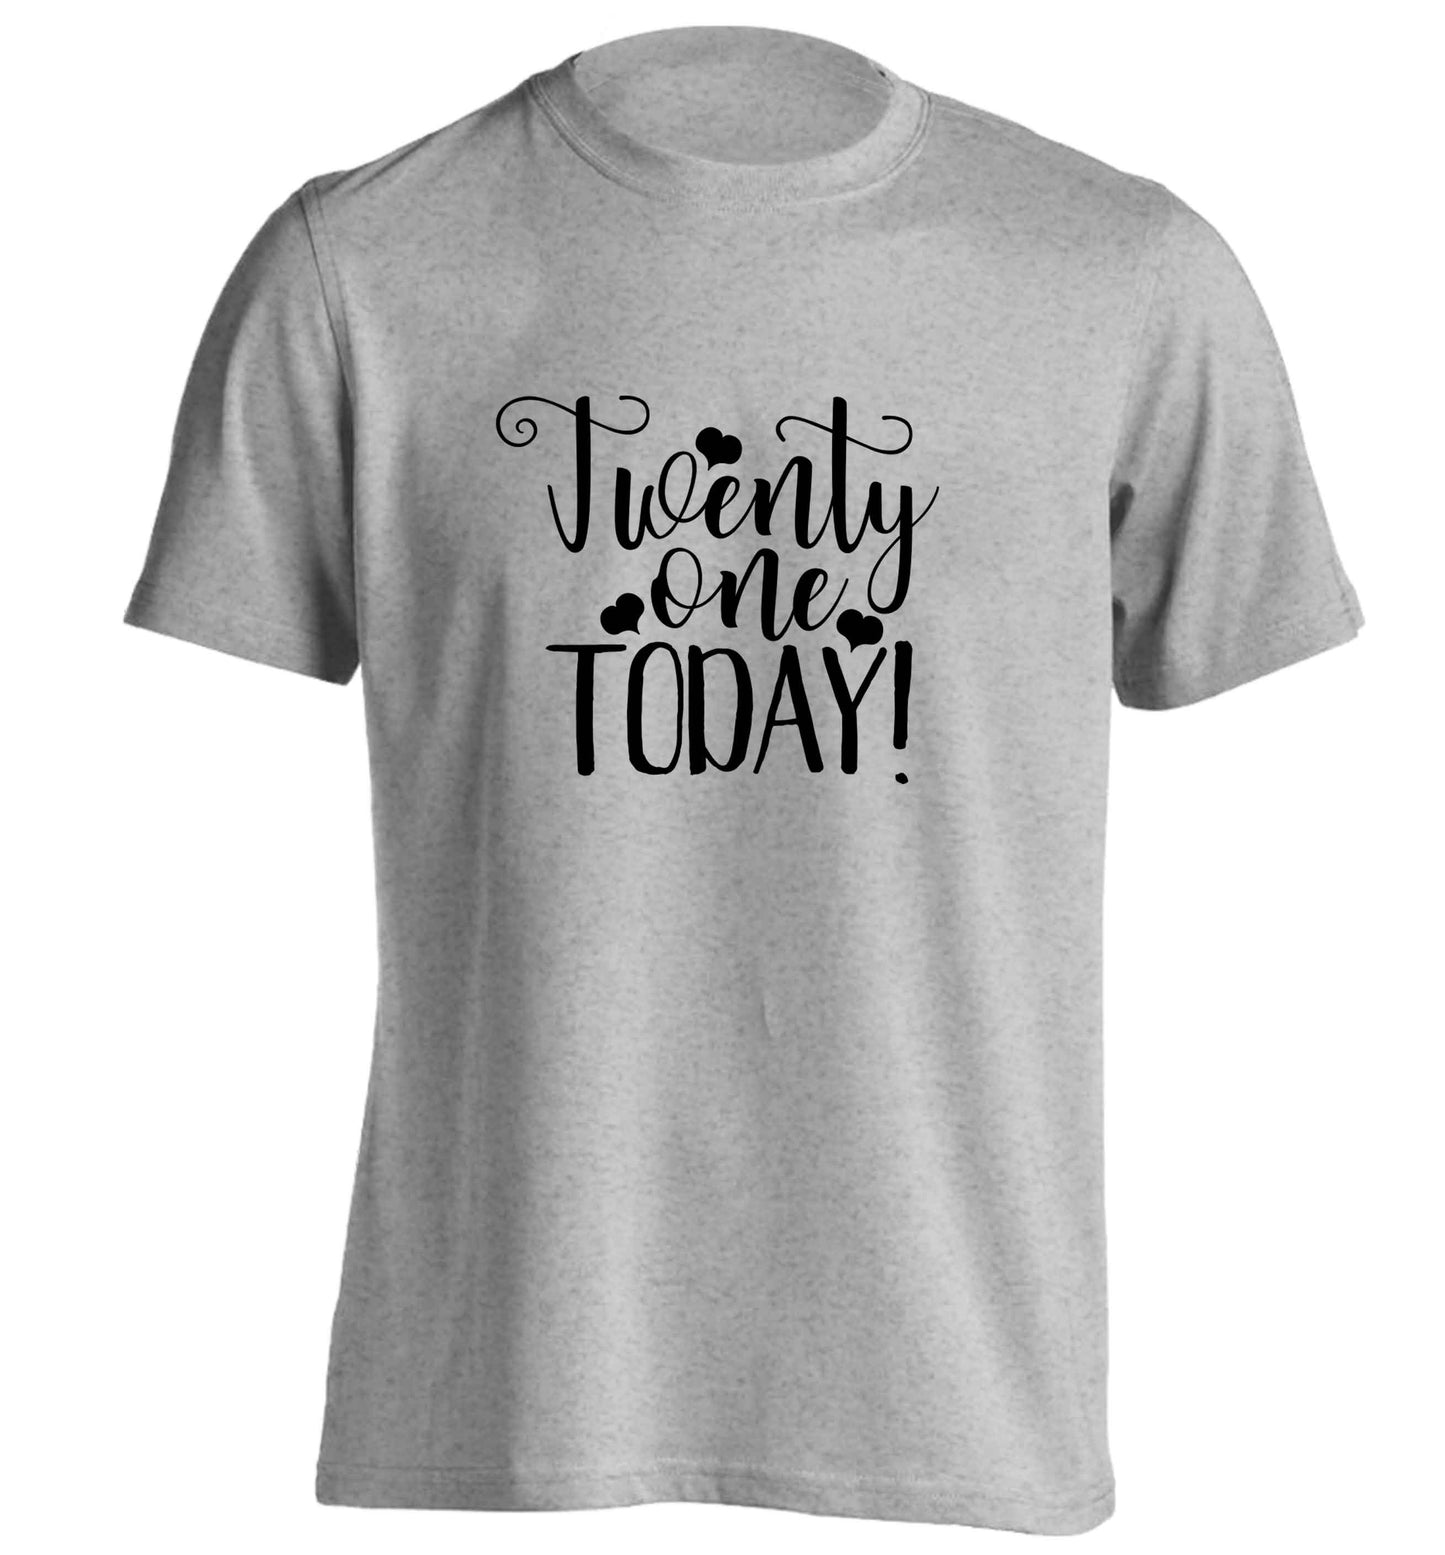 Twenty one today!adults unisex grey Tshirt 2XL